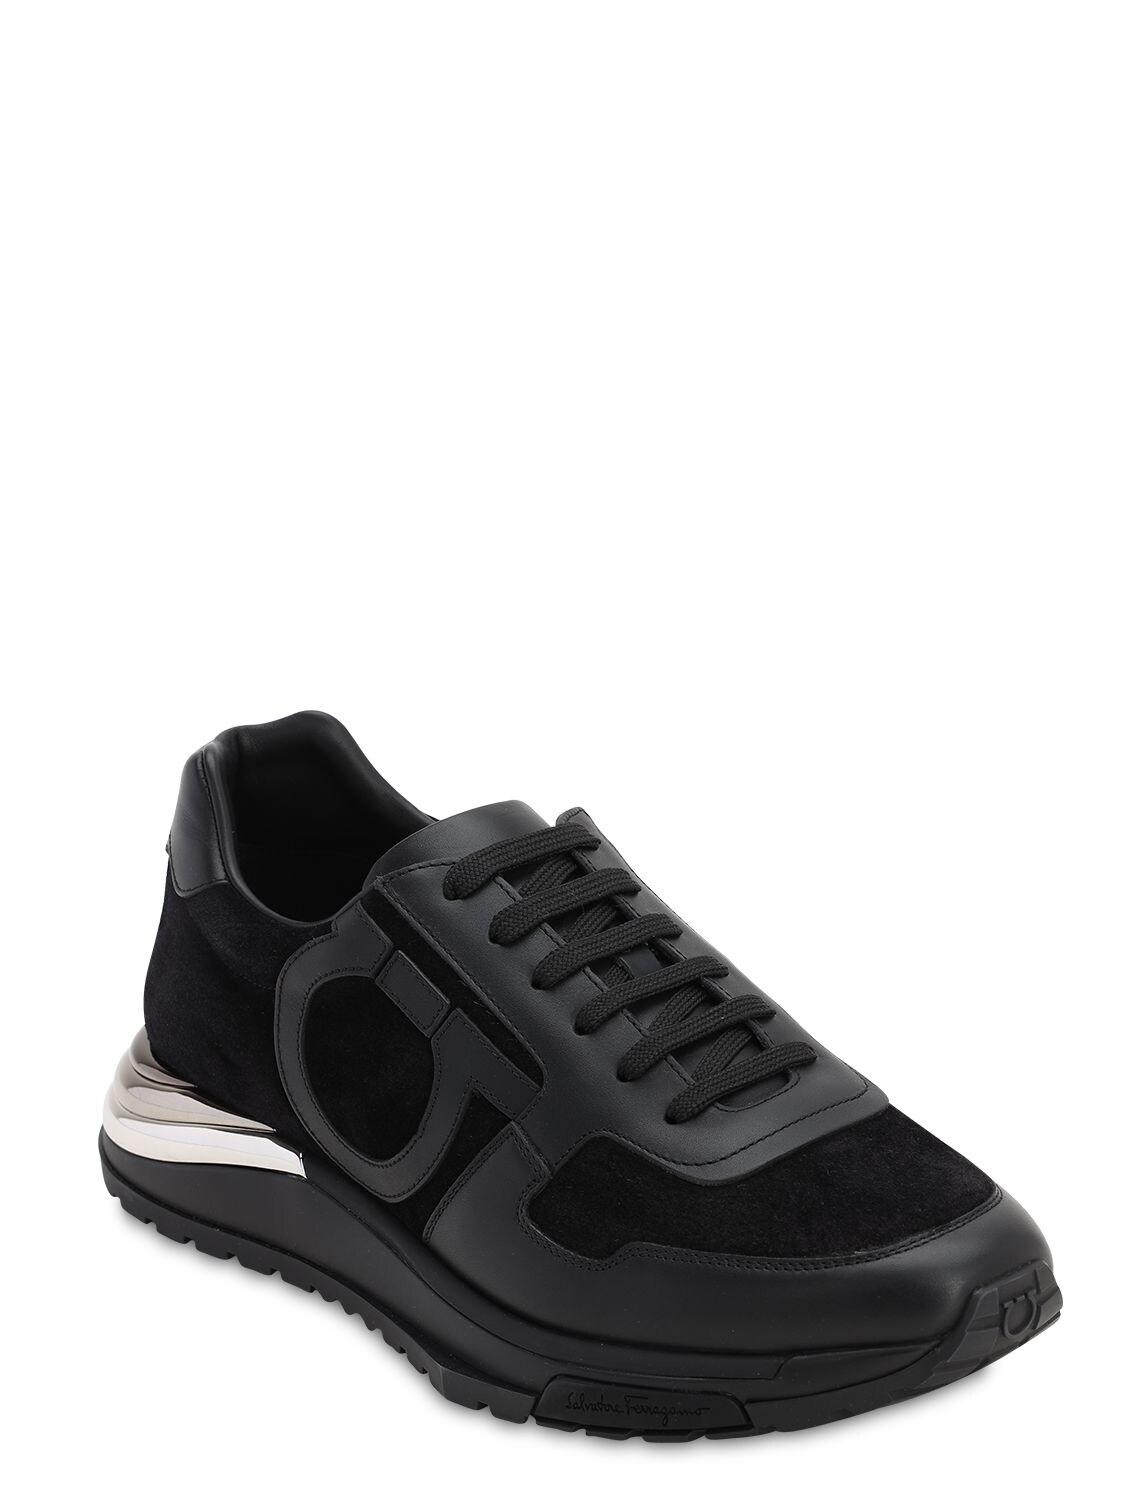 Ferragamo Brooklyn Swilly Suede & Leather Sneakers in Black for Men ...